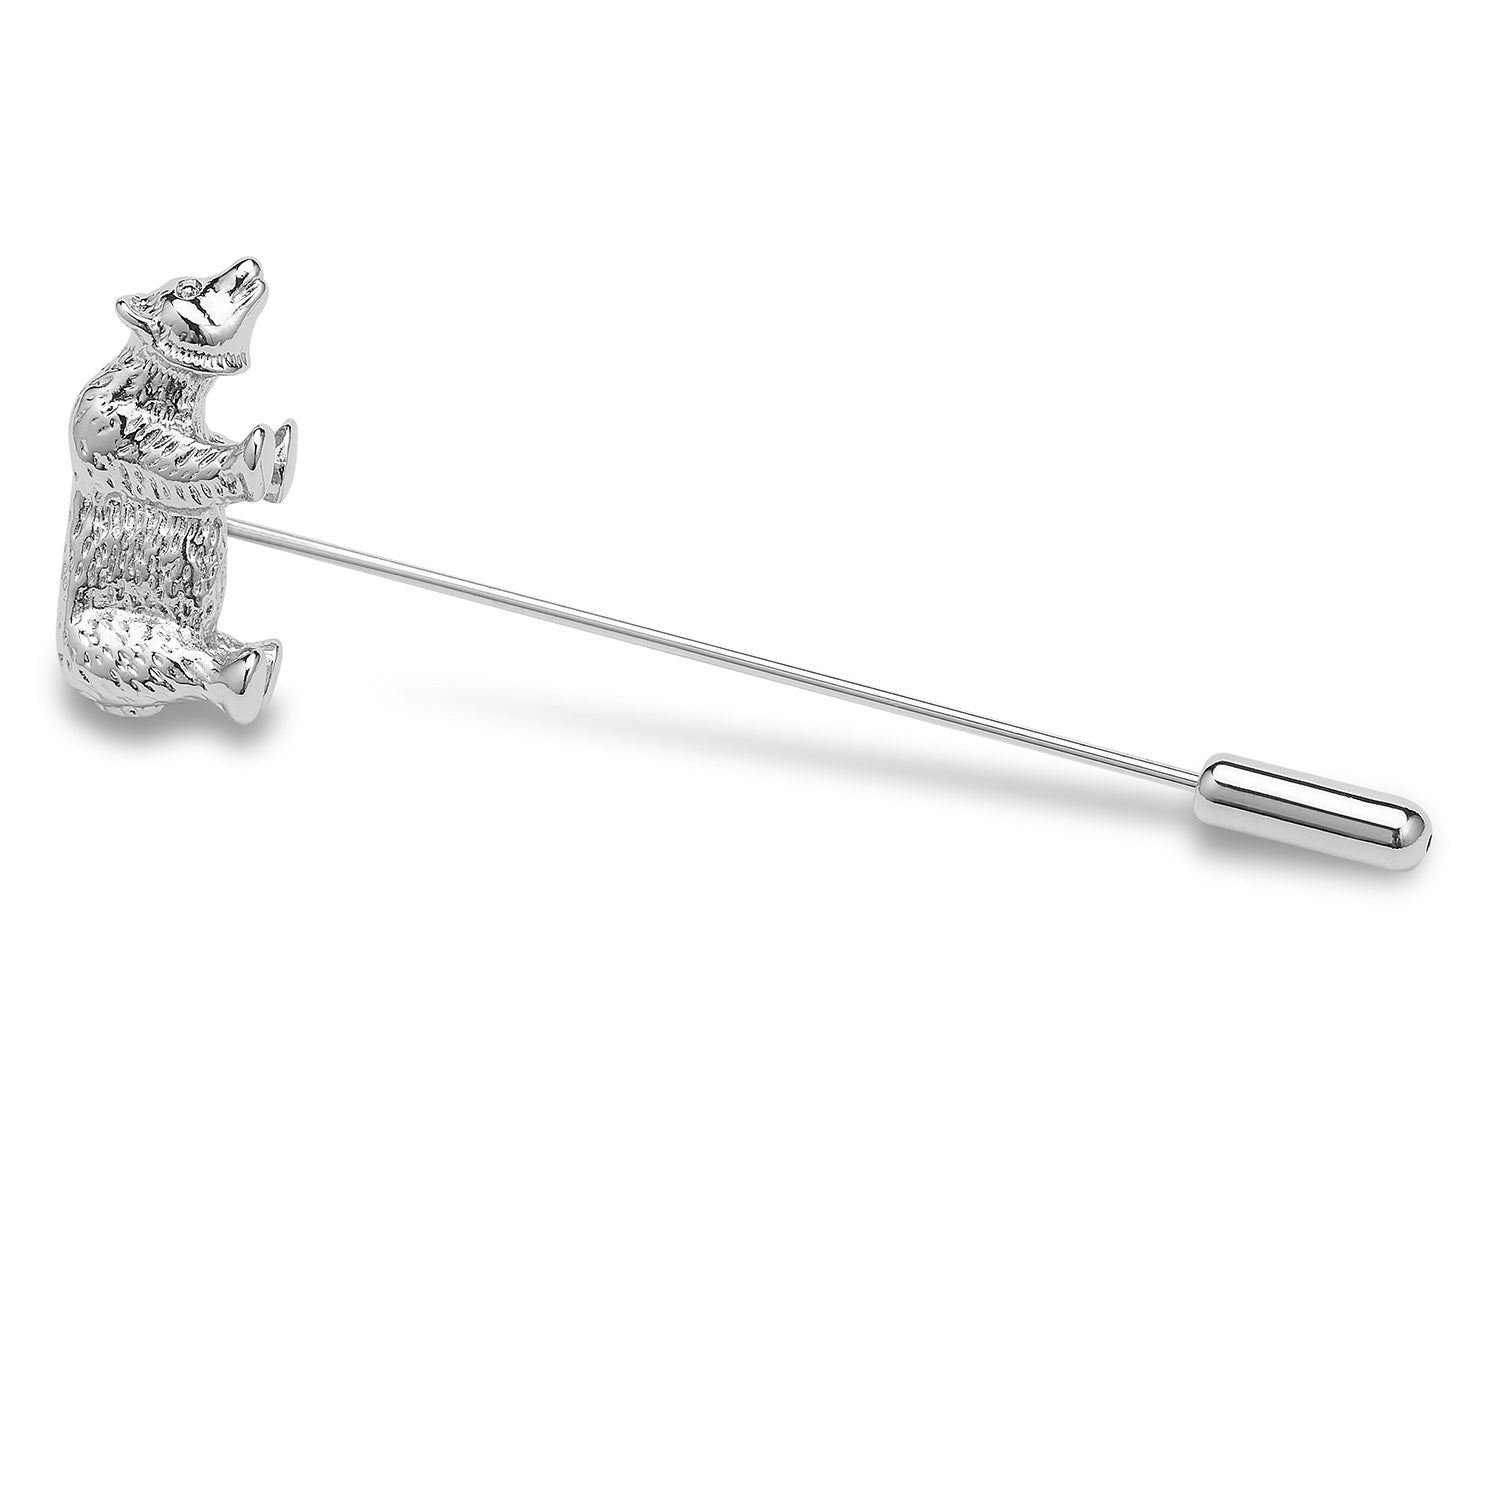 Hardy Bear Lapel Pin